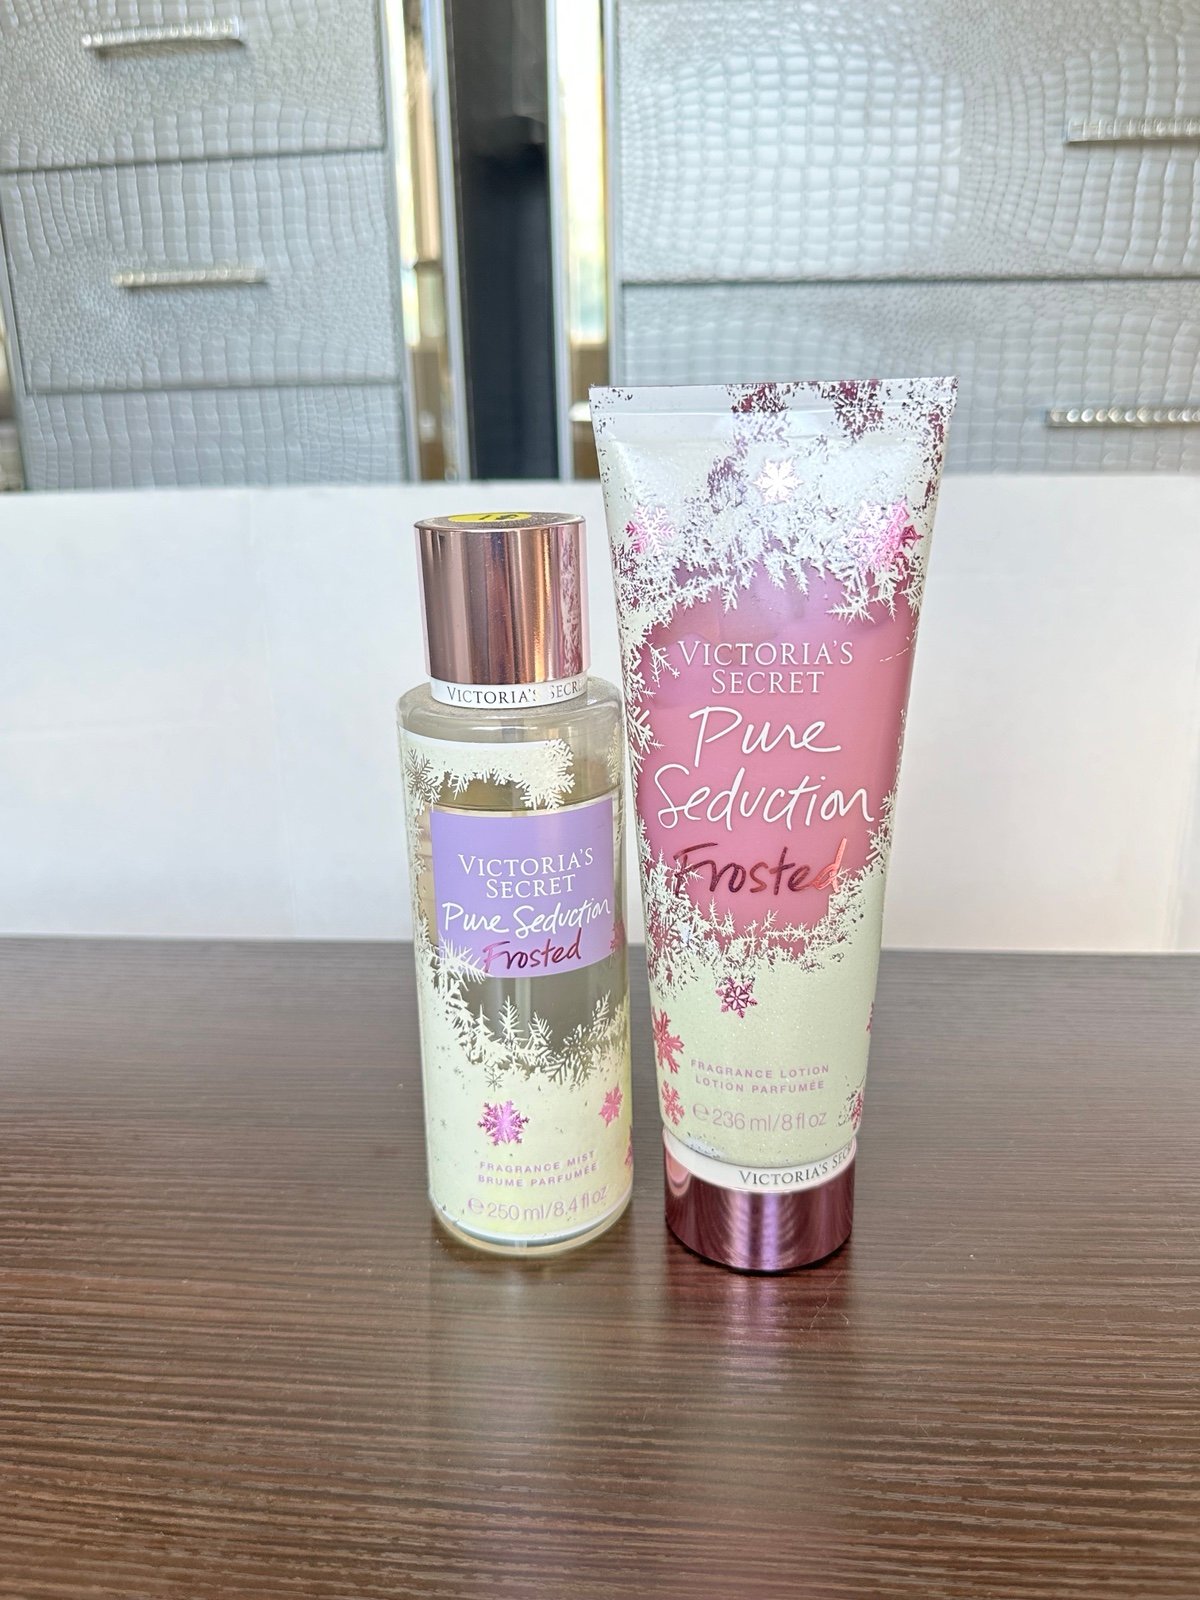 PURE SEDUCTION FROSTED VS Victoria’s Secret mist spray lotion cream RARE HTF e4tG8E6DT